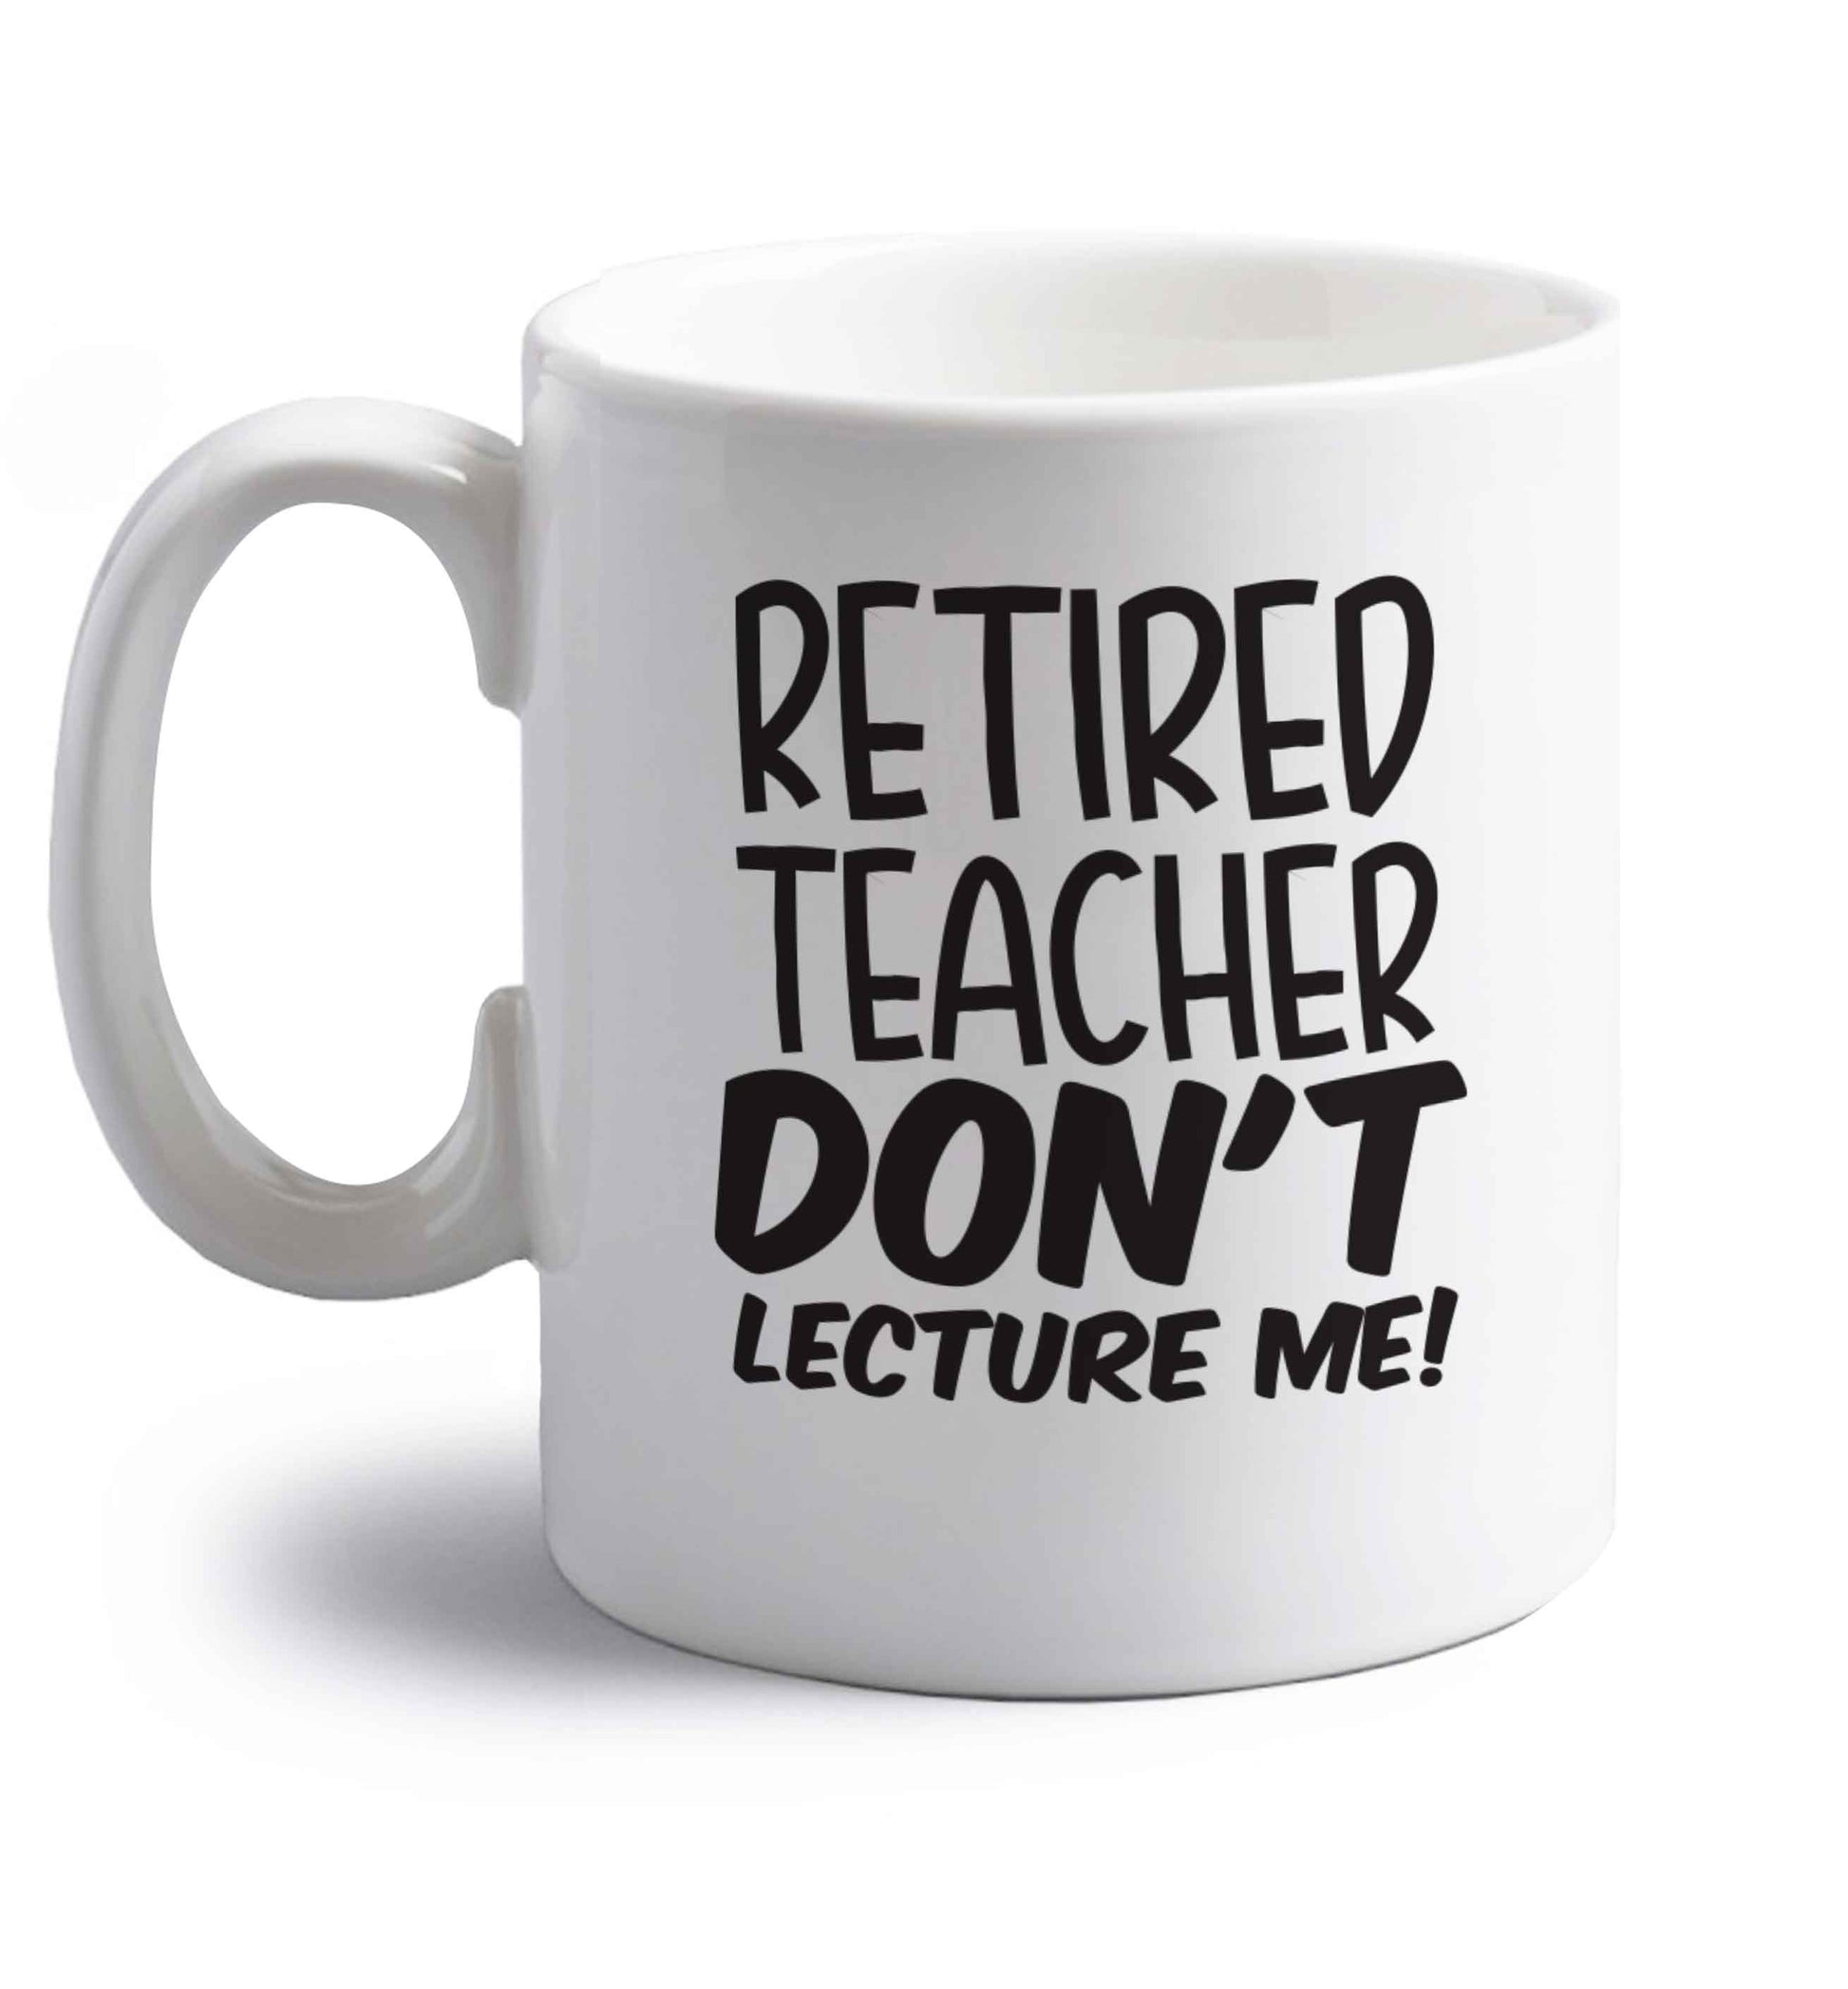 Retired teacher don't lecture me! right handed white ceramic mug 